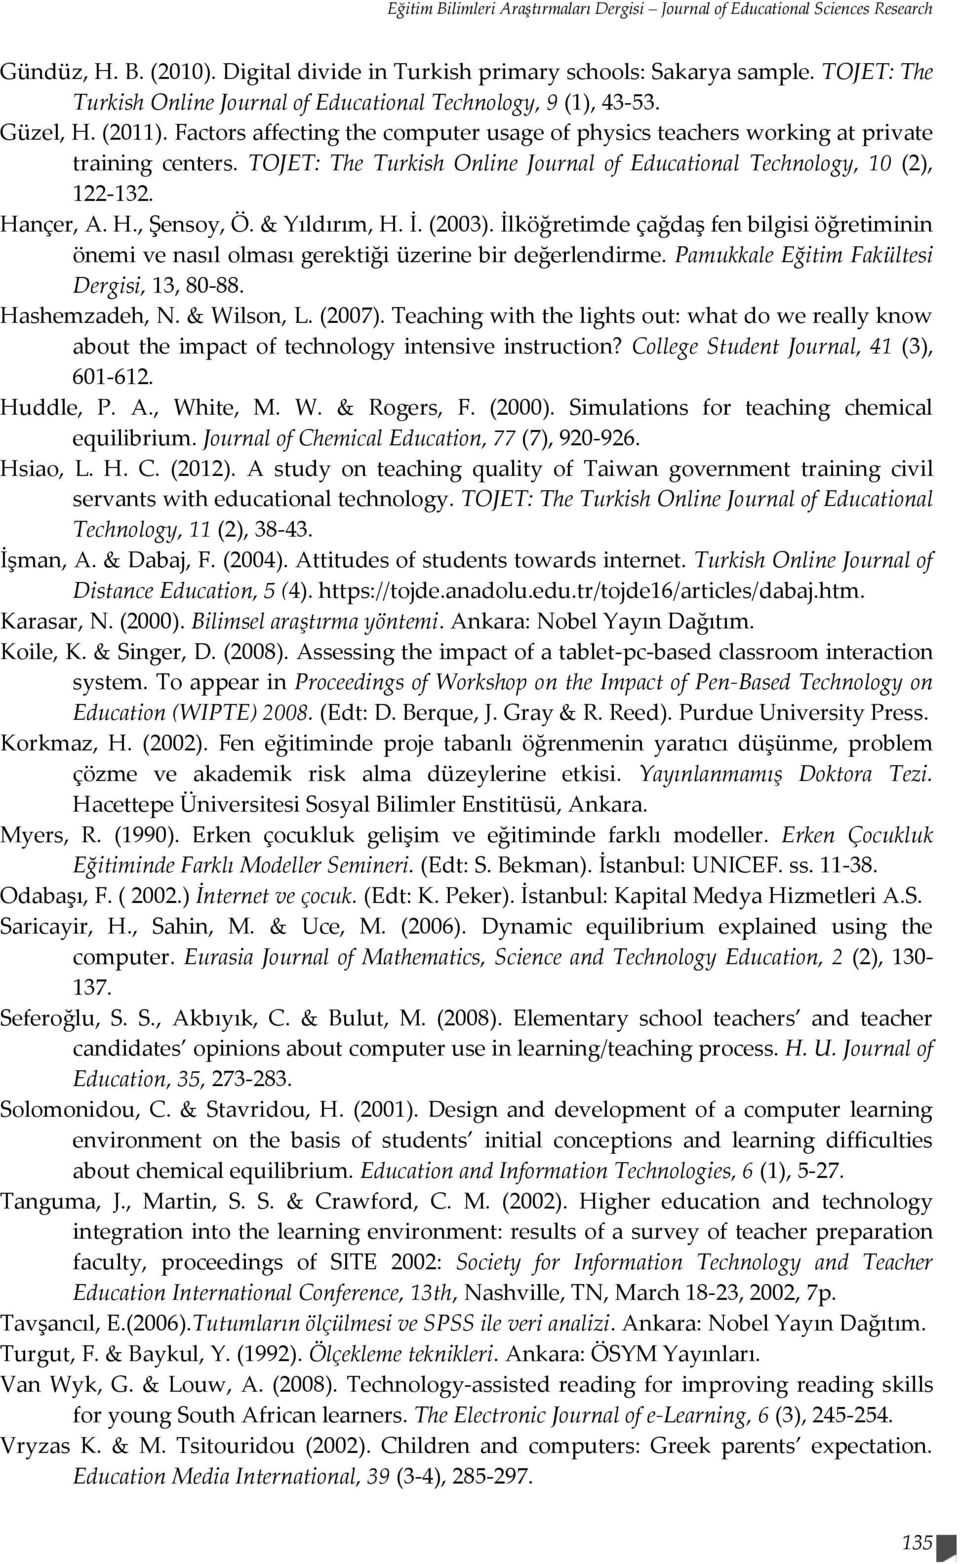 TOJET: The Turkish Online Journal of Educational Technology, 10 (2), 122-132. Hançer, A. H., Şensoy, Ö. & Yıldırım, H. İ. (2003).